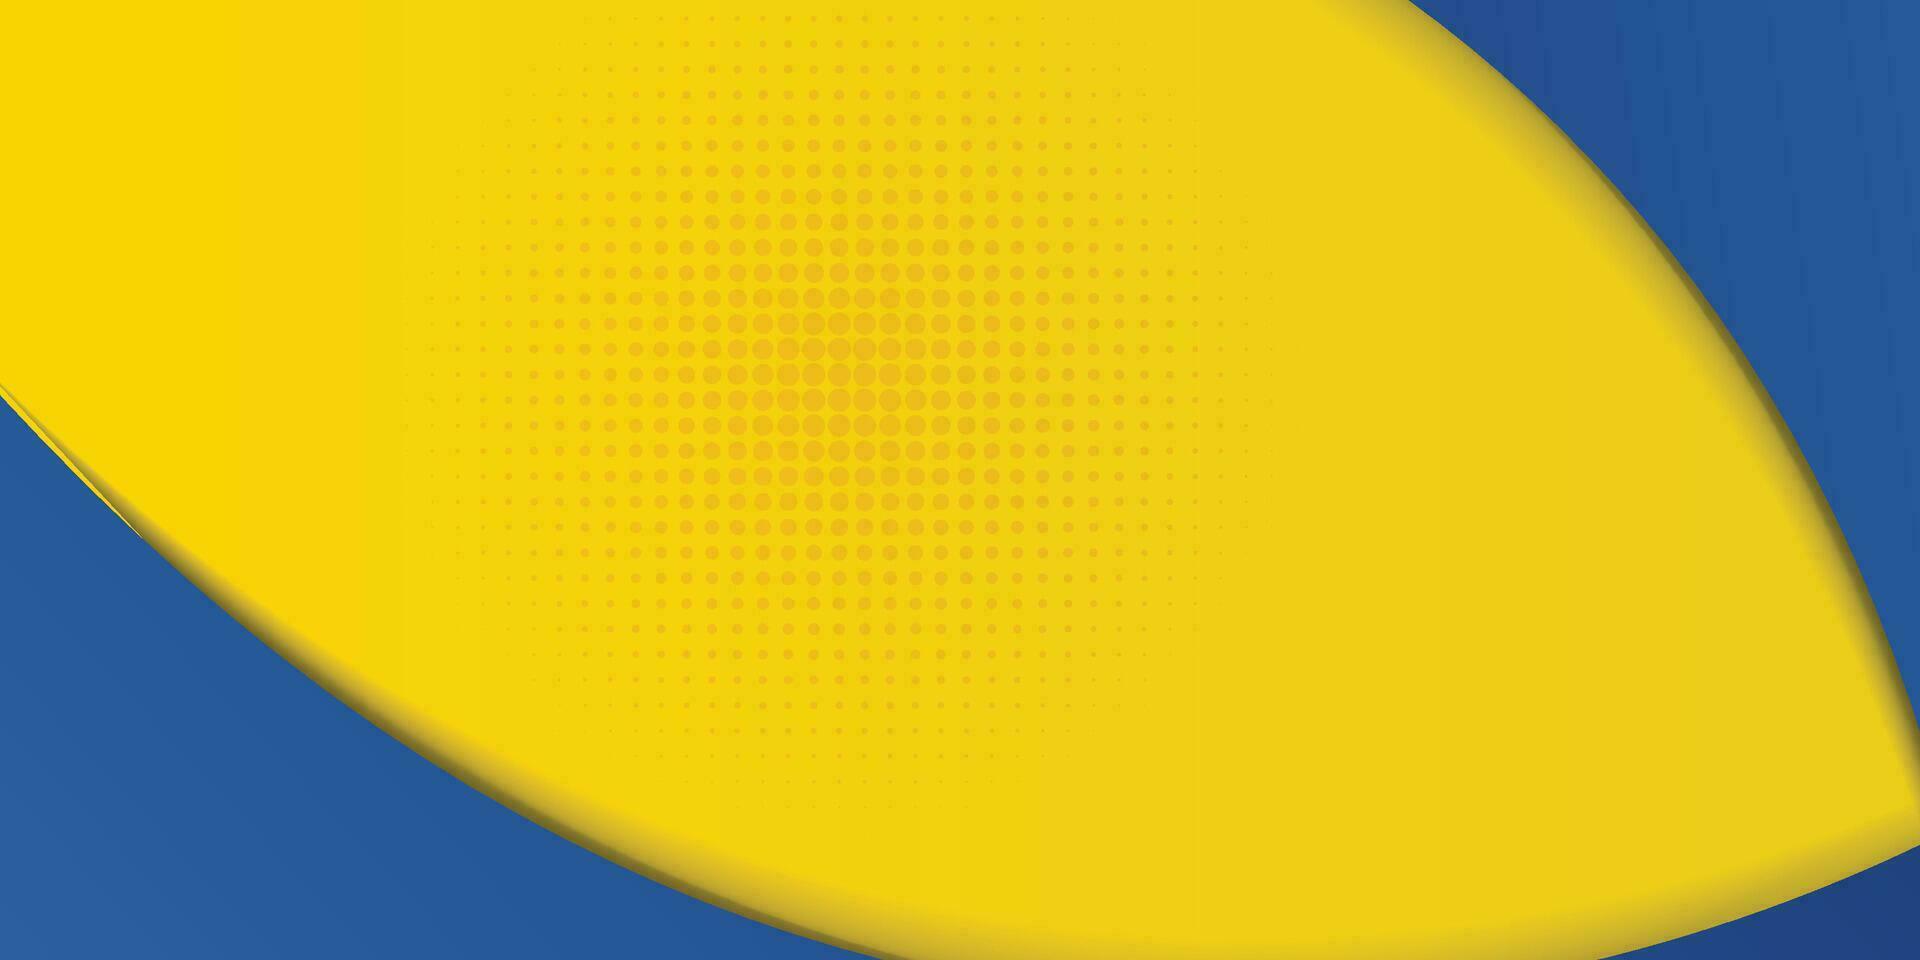 abstrakt gul och blå geometrisk kurva överlappning lager bakgrund med halvton prickar dekoration. modern horisontell baner mall design. kostym för omslag, rubrik, affisch, baner, hemsida, företag vektor